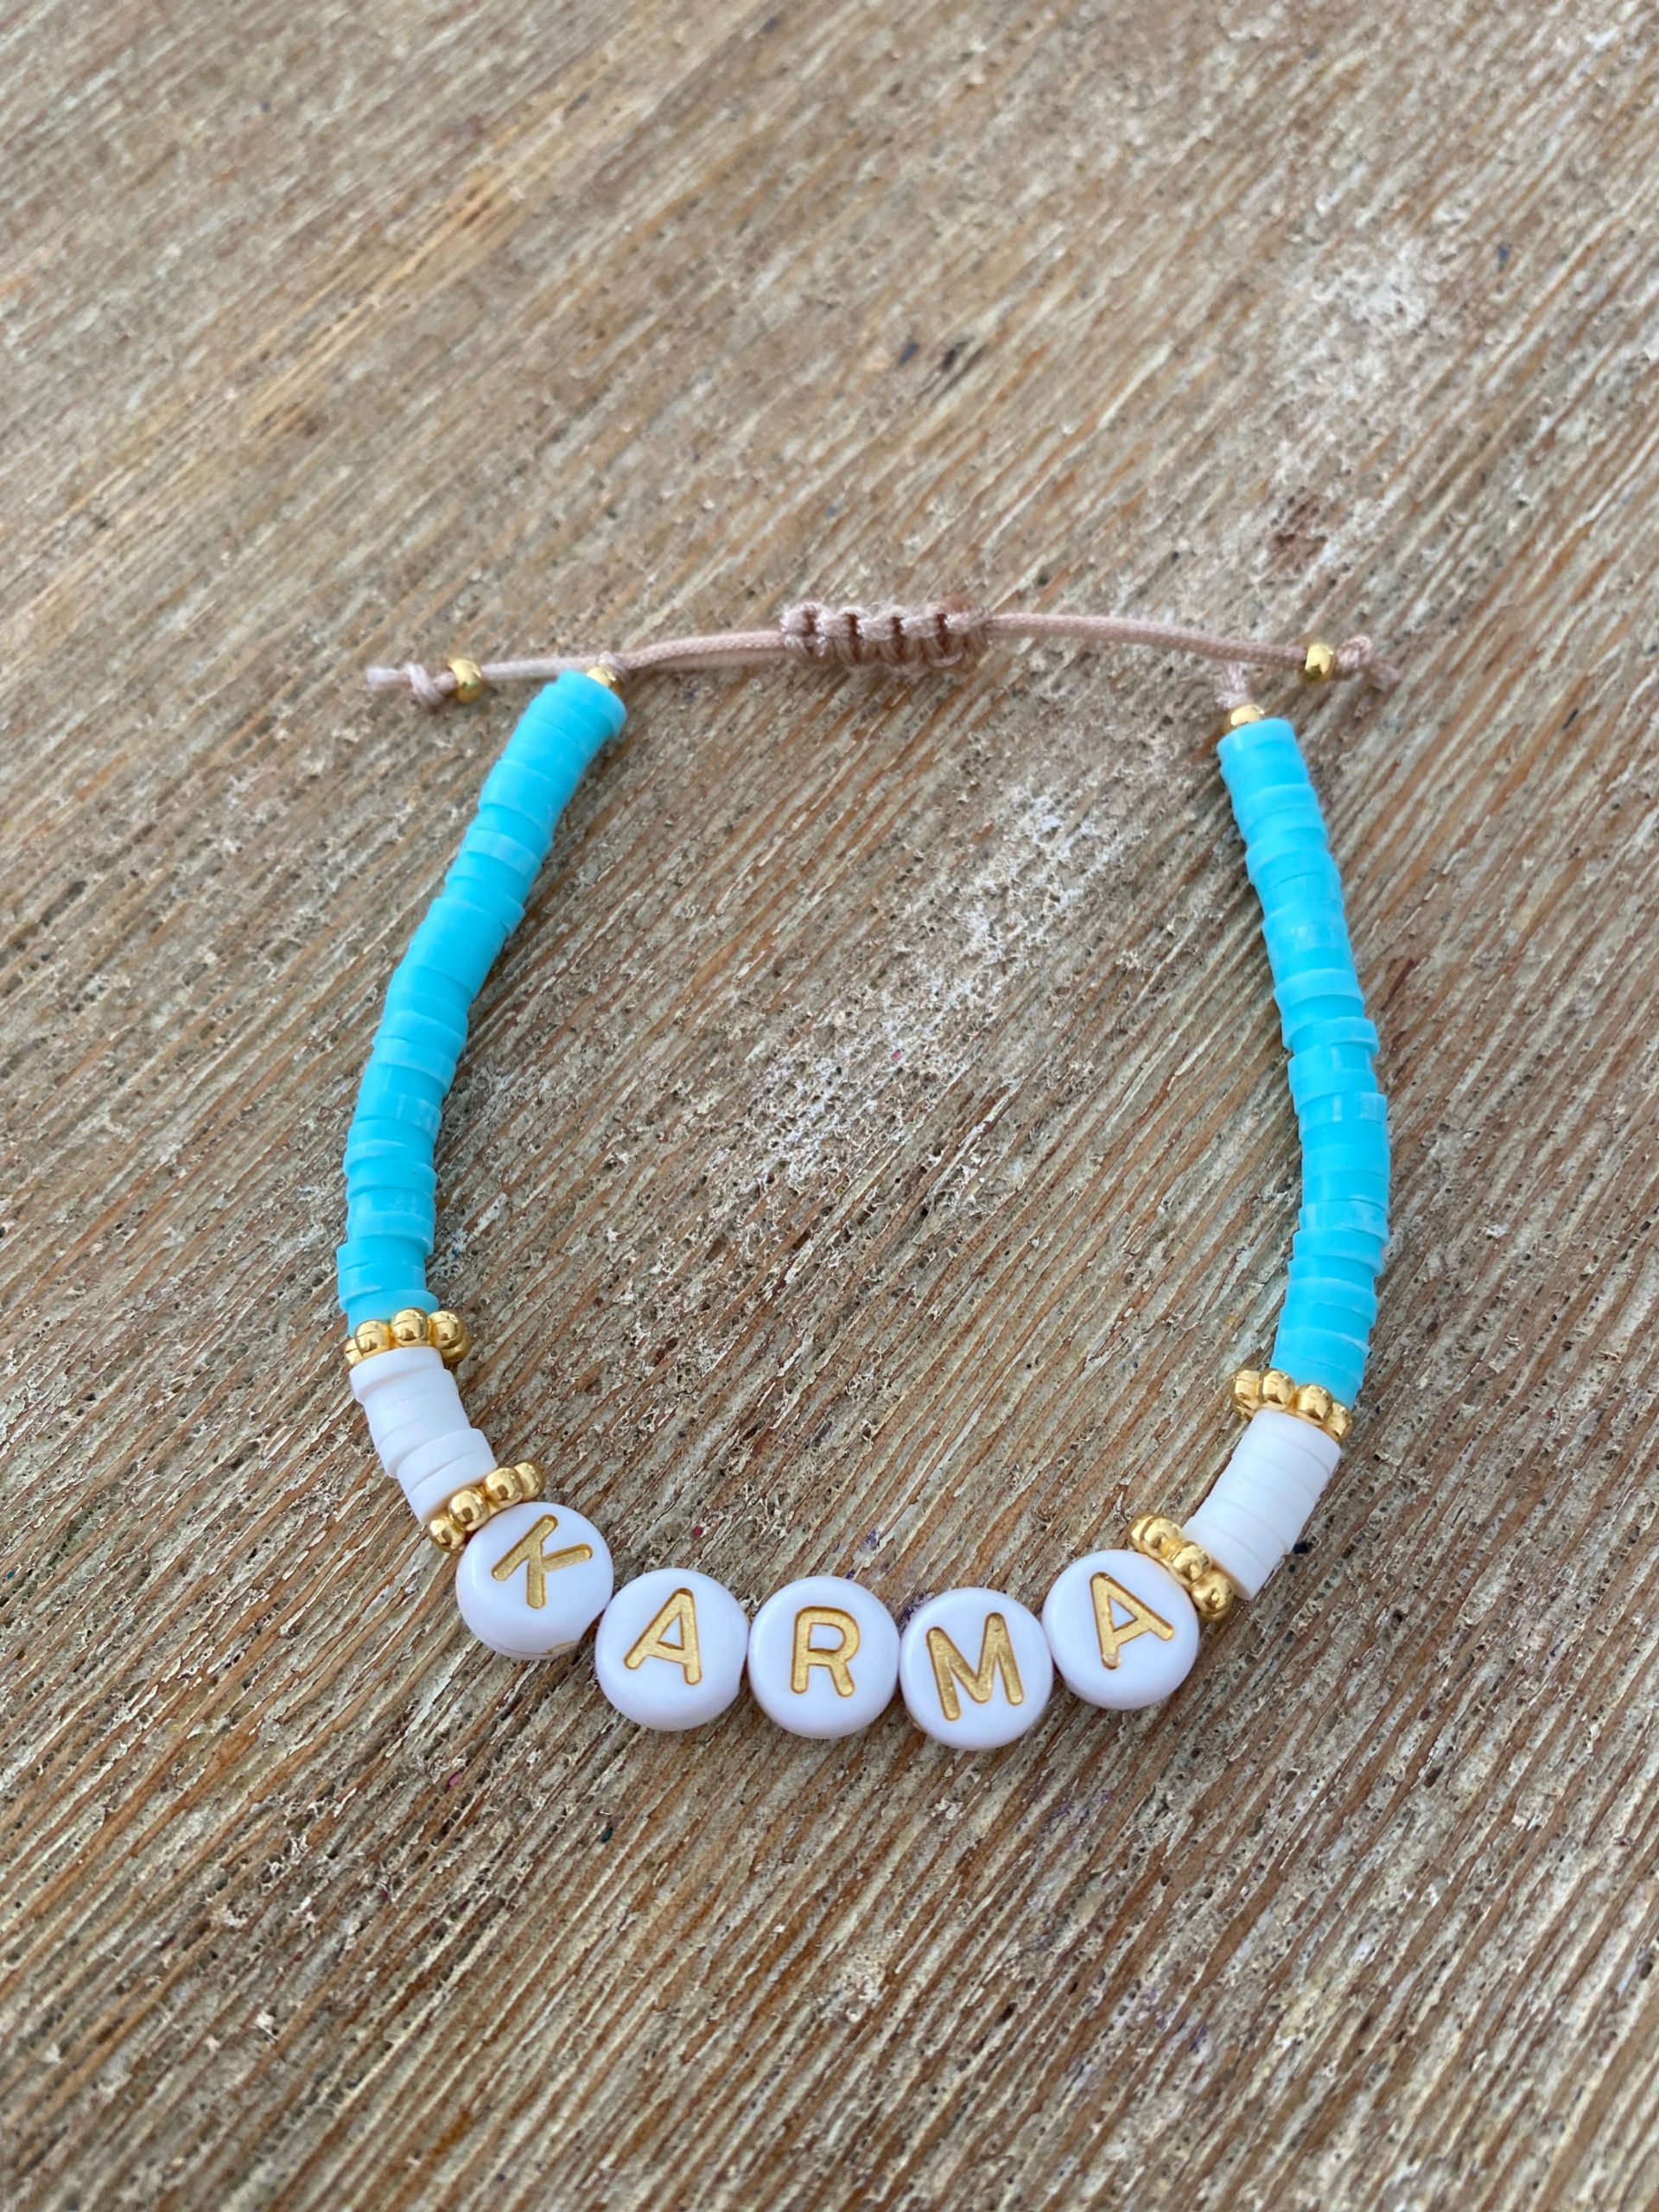 Perles Enfants Perles pour Bracelet Kit Perles Bijoux Enfant Fille